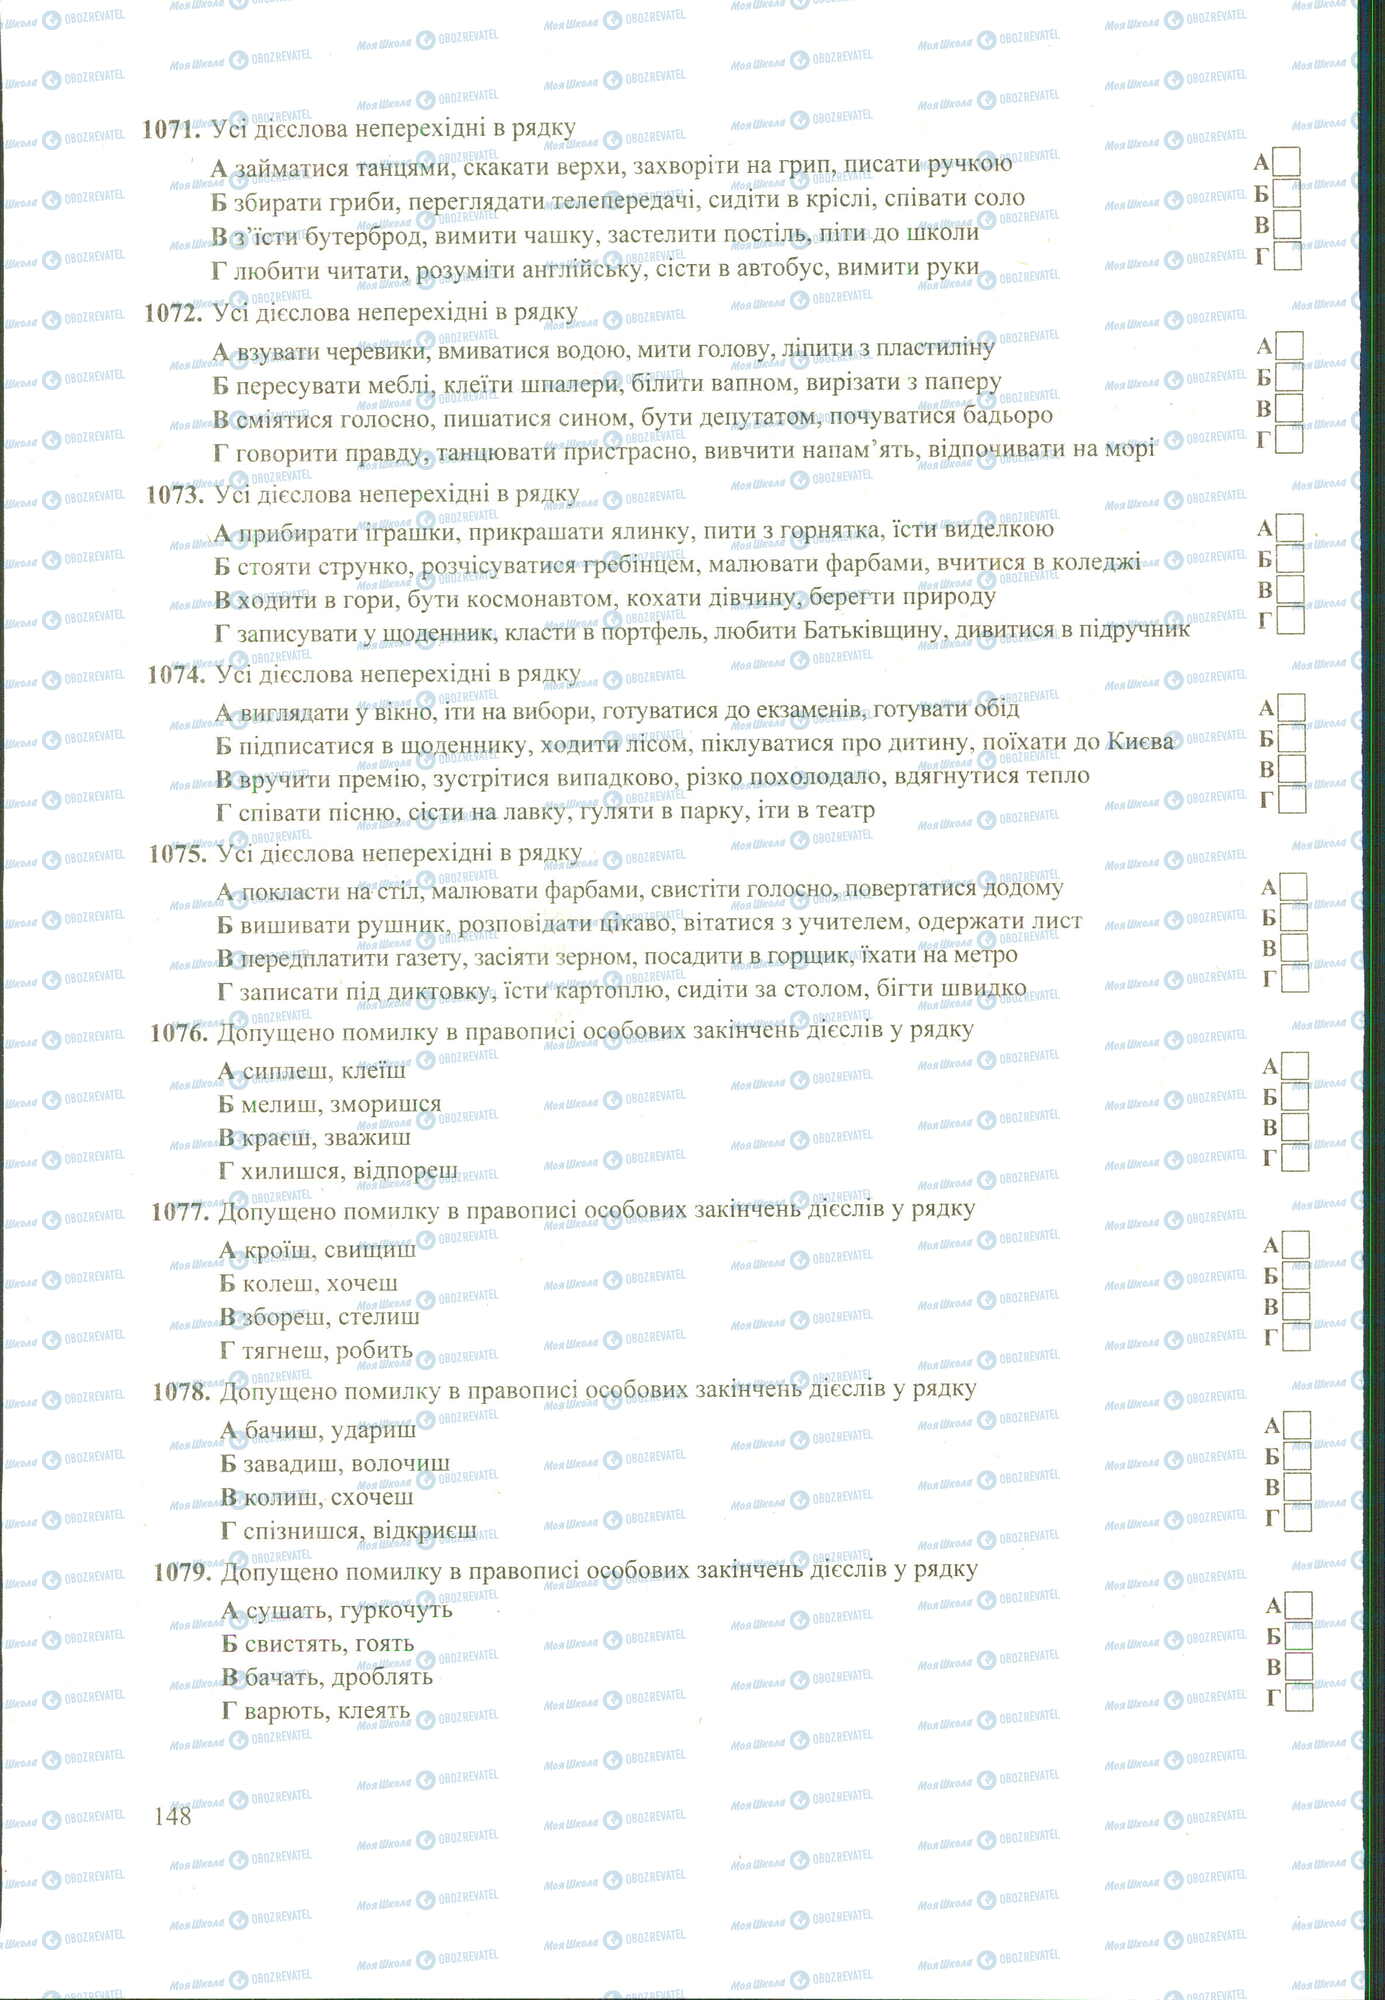 ЗНО Укр мова 11 класс страница 1071-1079